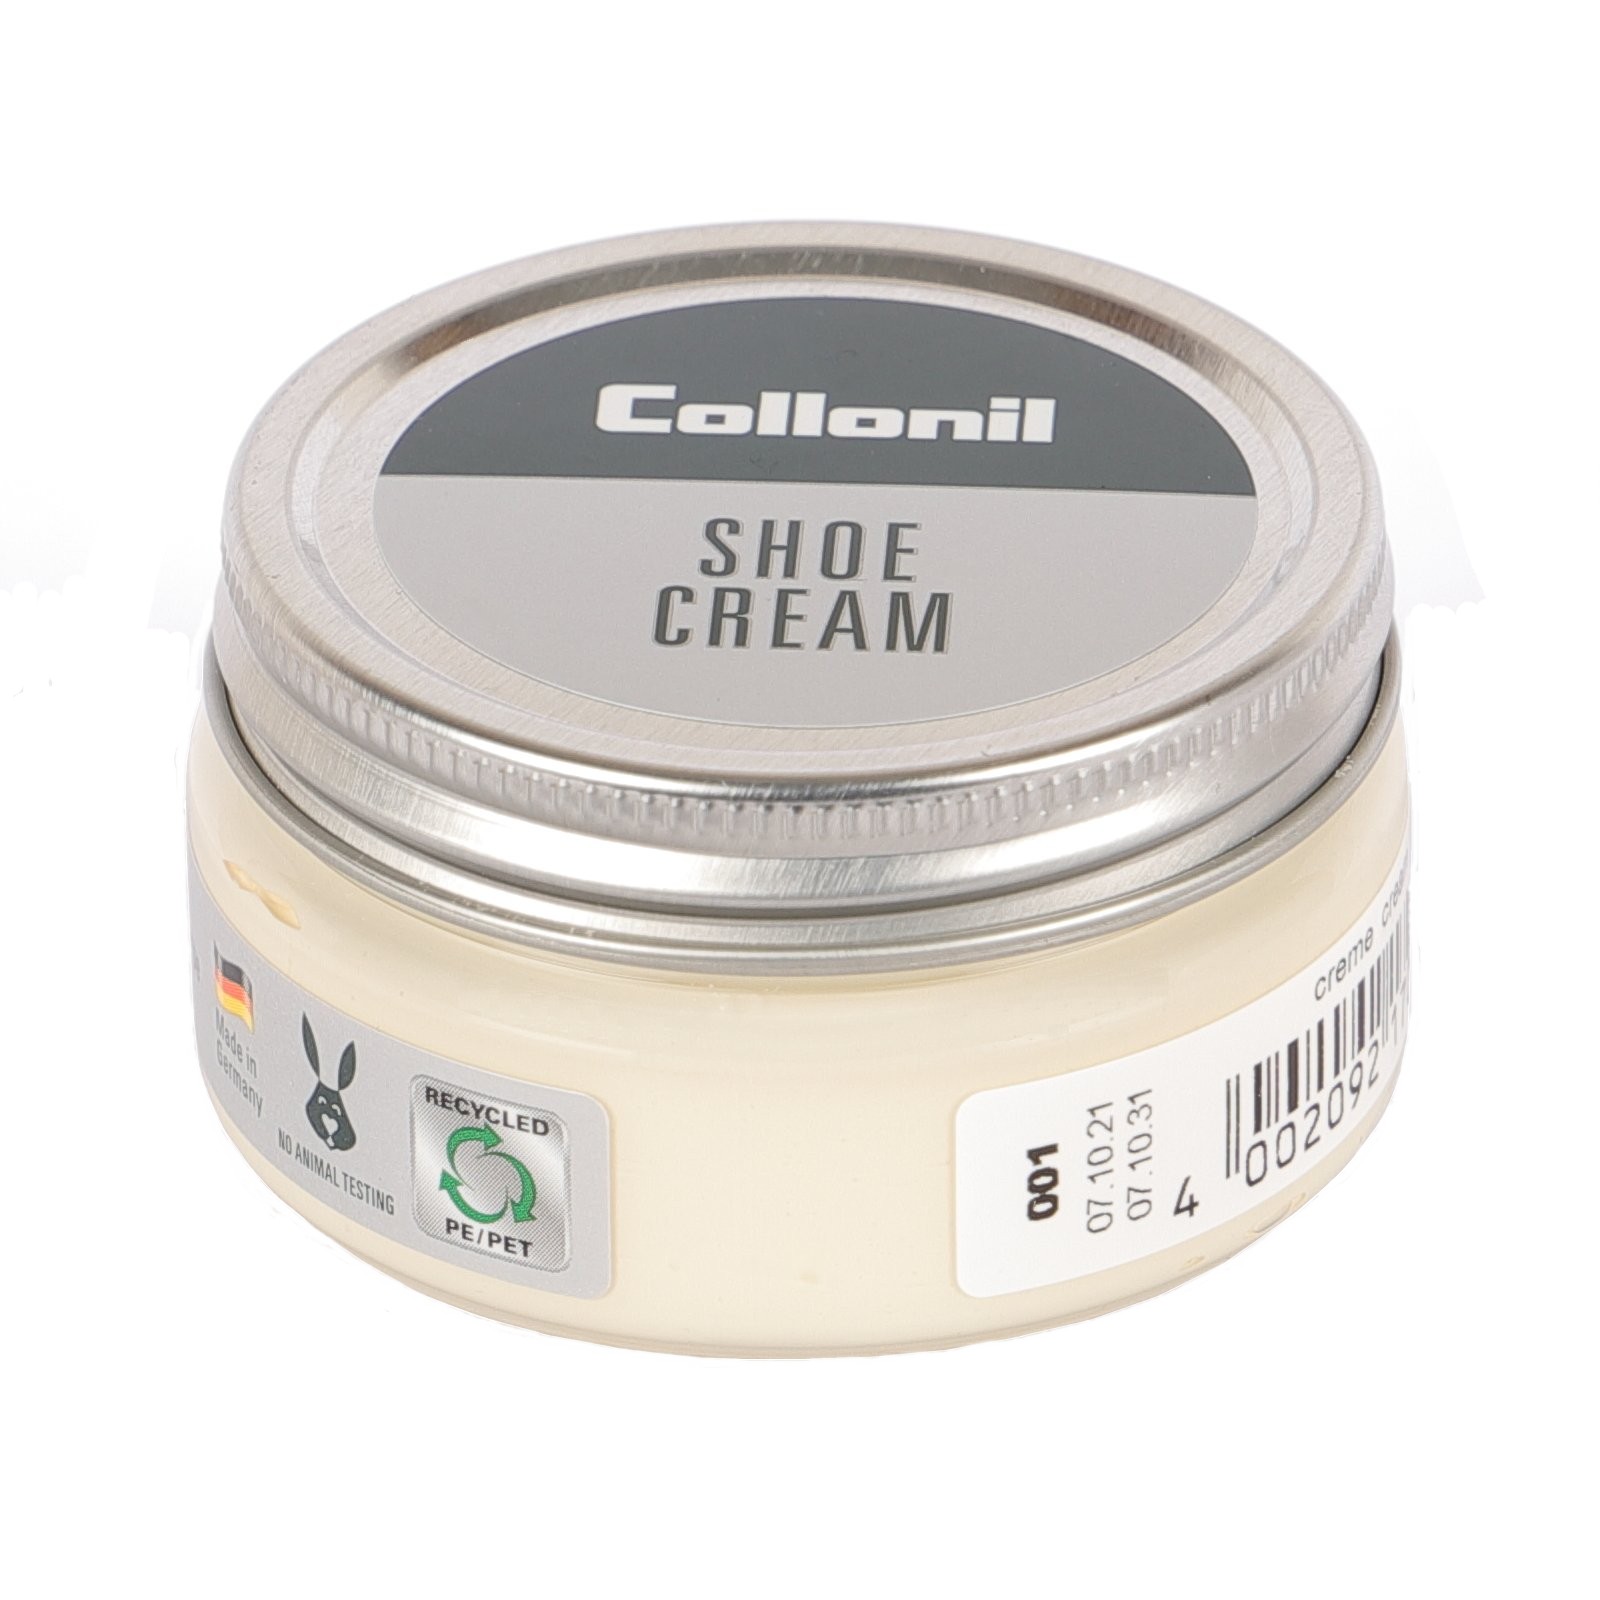 Collonil Shoecream 60ml 001 Cream*